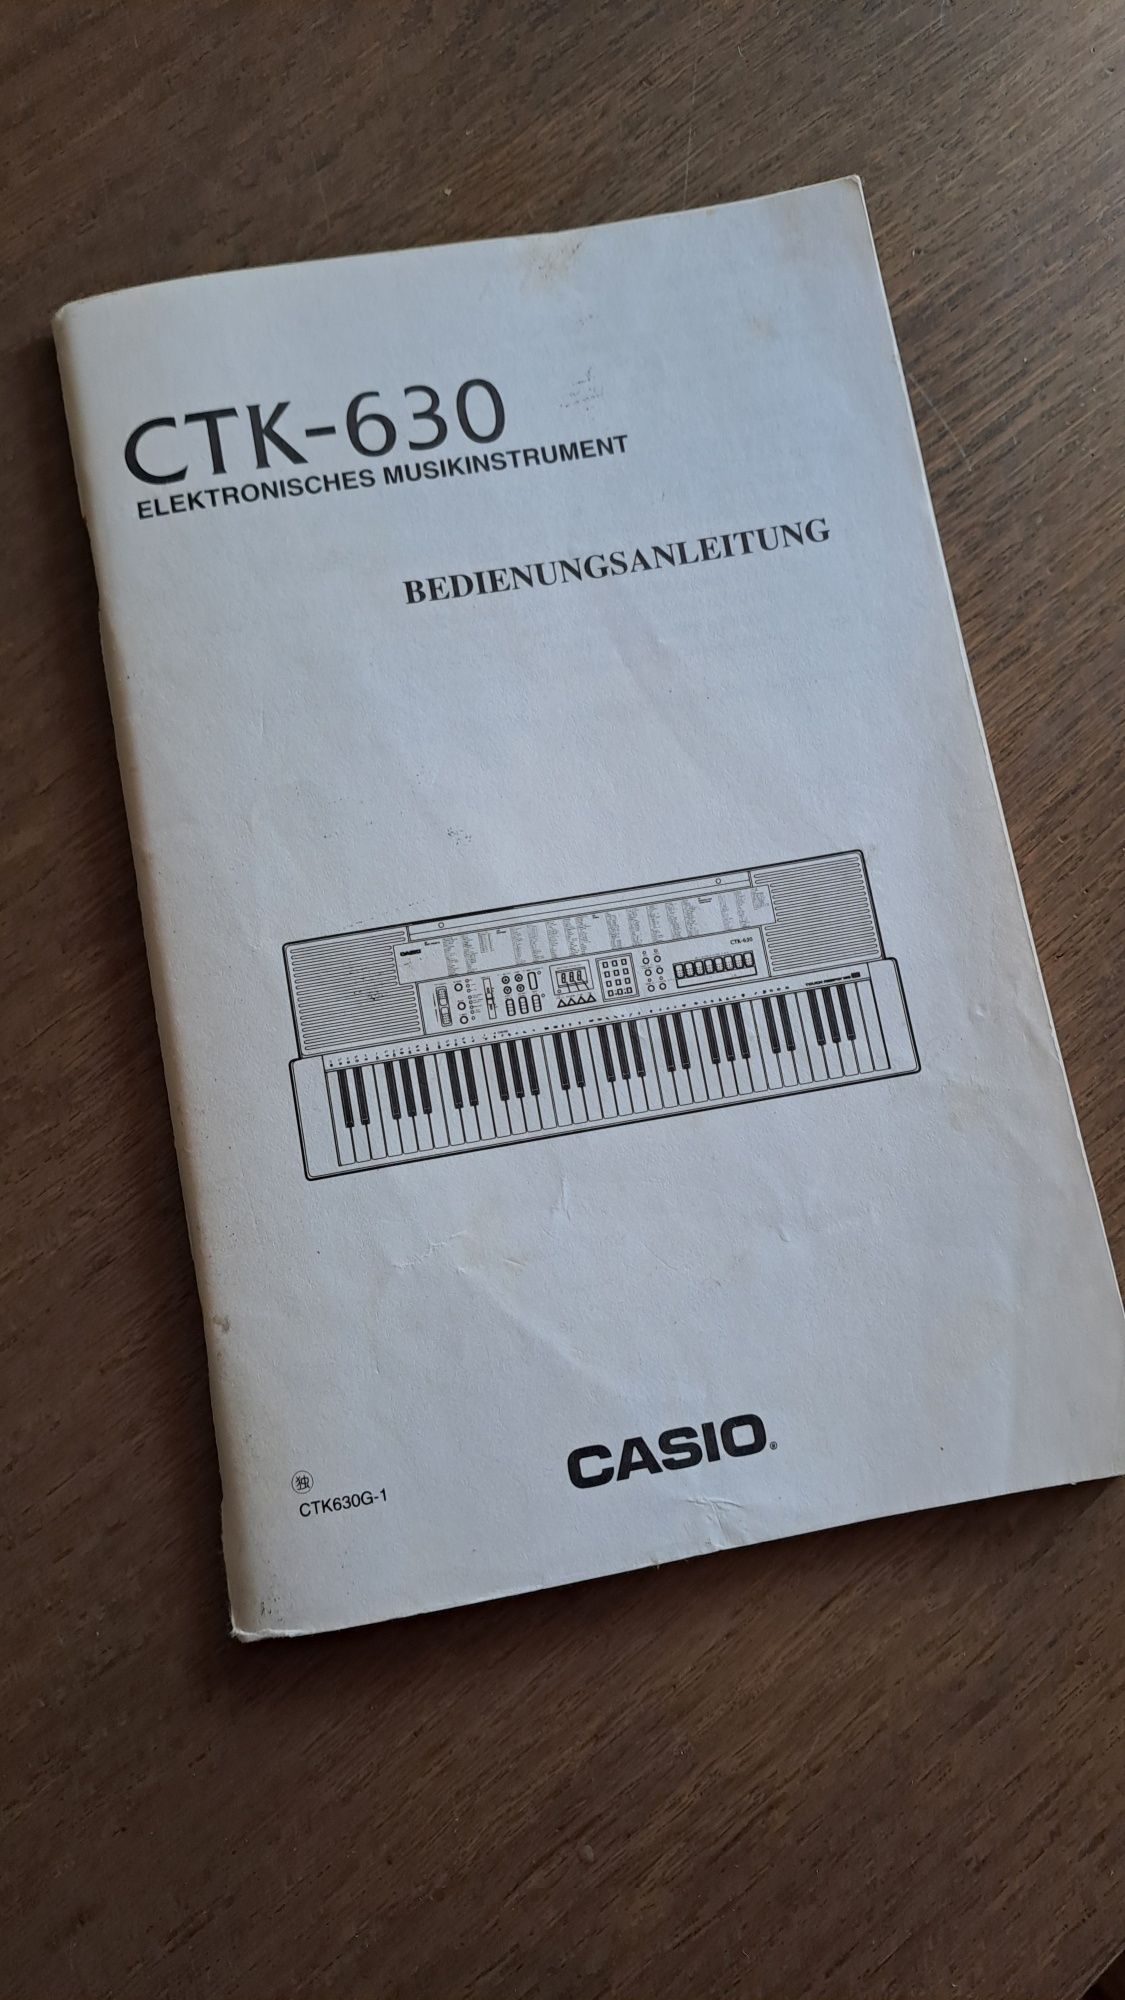 Casio CTK-630 instrukcja,  podręcznik akordy . Język niemiecki.